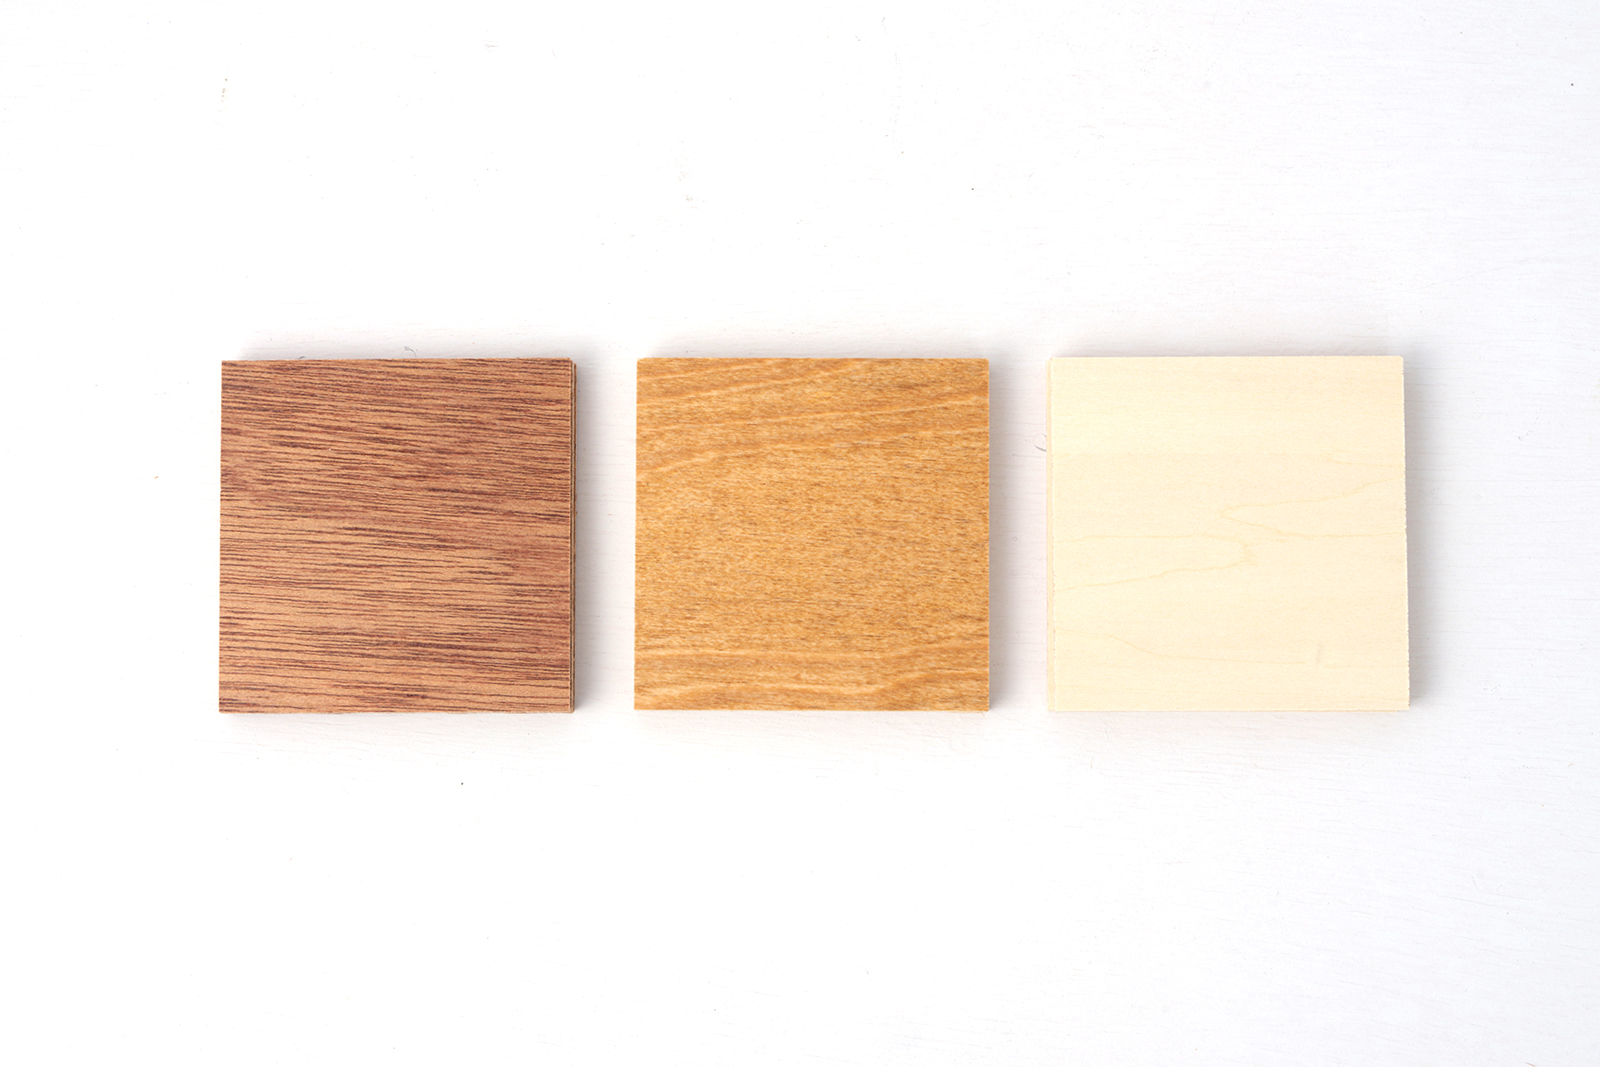 木製ミニマルキッチン ラワン W1500×D600 KB-KC016-15-G183 仕上げは3種類あります。左からラワン・バーチ・シナ。各商品ページをご確認ください